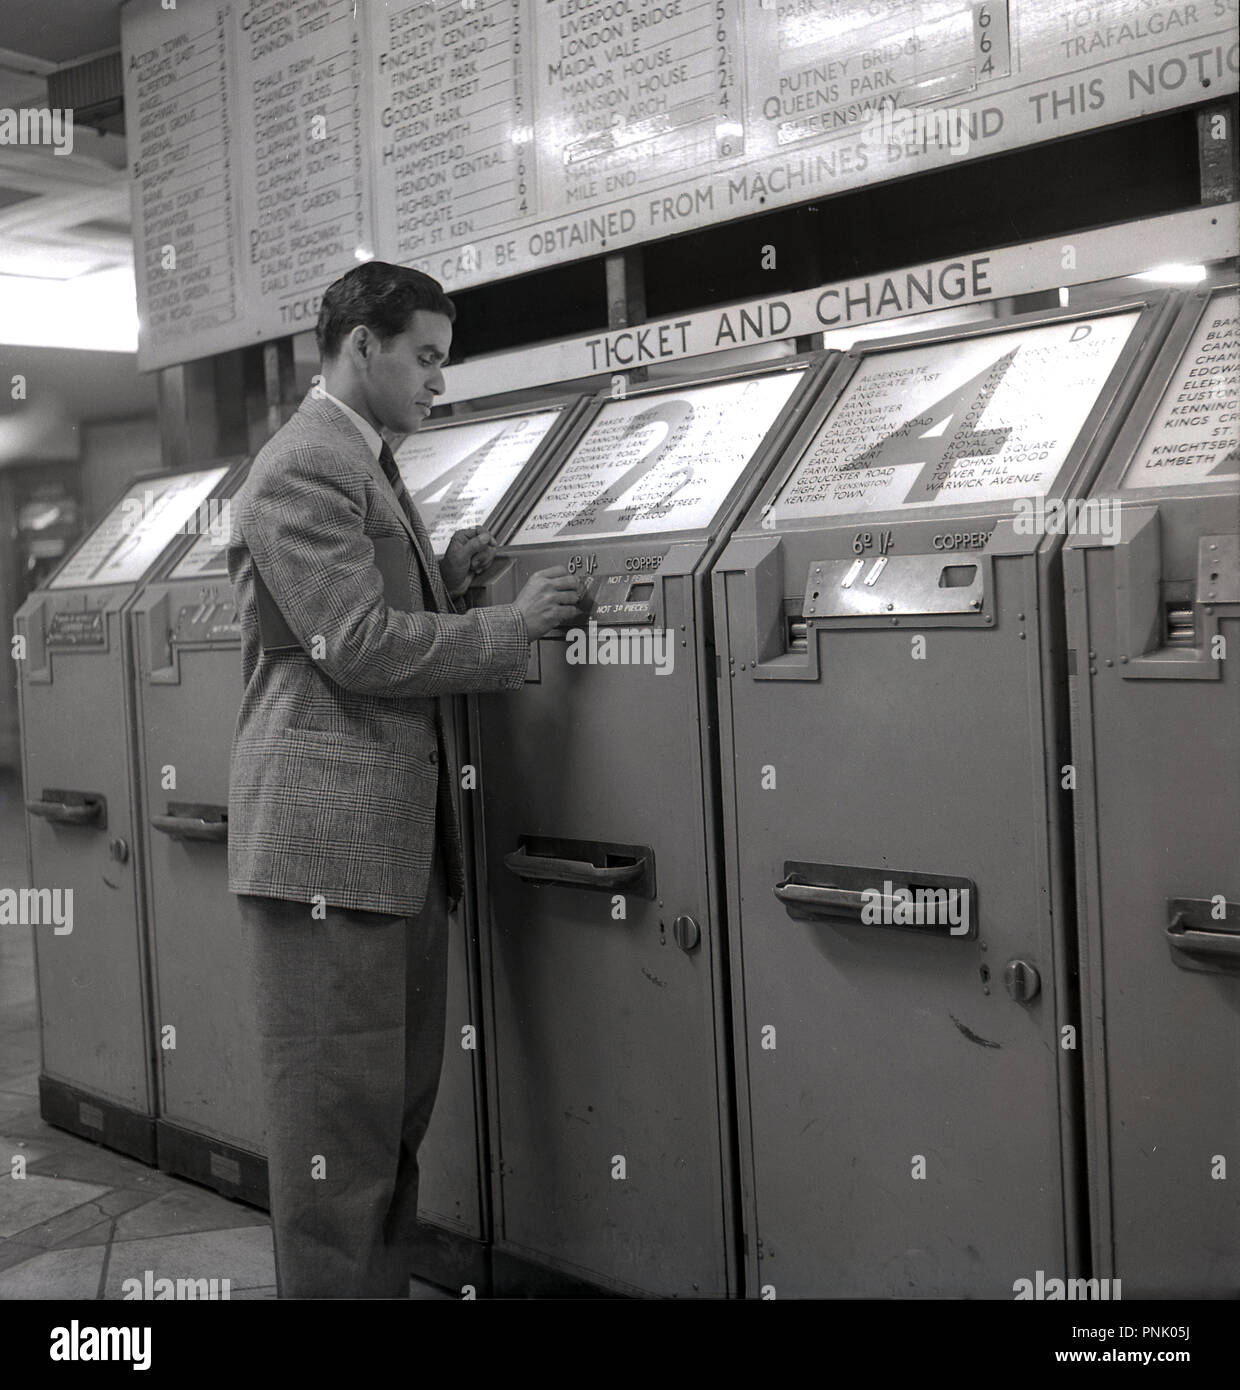 1948, historische, eine ausländische männliche Besucher aus dem Commonwealth in der Londoner U-Bahn kaufen ein Ticket für Zone 2, von den münzbetriebenen Automaten, London, Engalnd, UK. Stockfoto